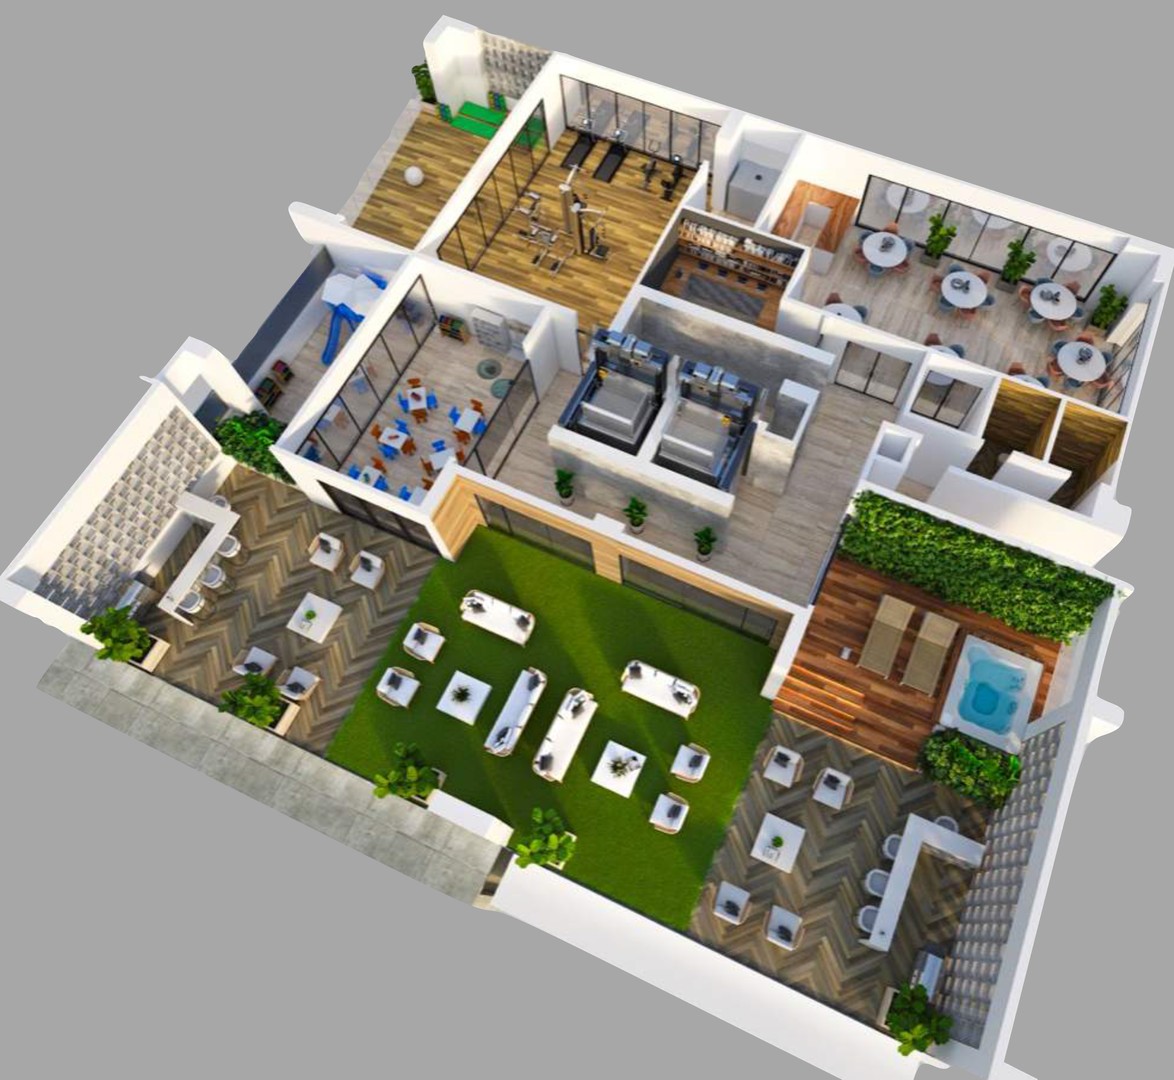 apartamentos - Apartamento en construcción en proyecto de 1, 2 y 3 habitaciones en Serralles 6